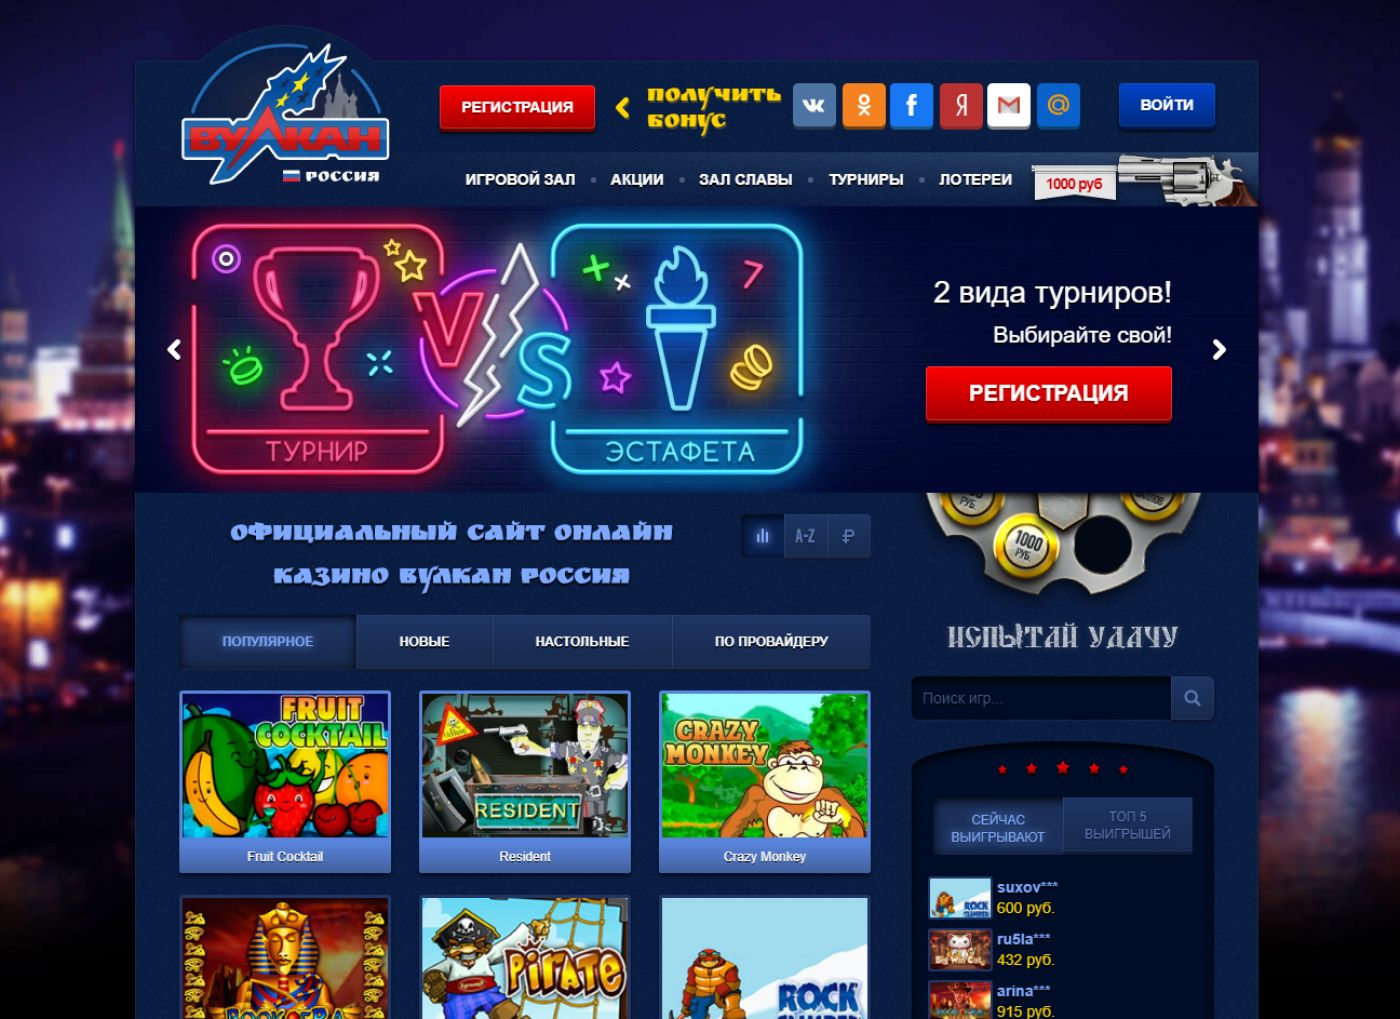 Вулкан топ 10 казино онлайн джойказино официальный сайт играть бесплатно на русском языке